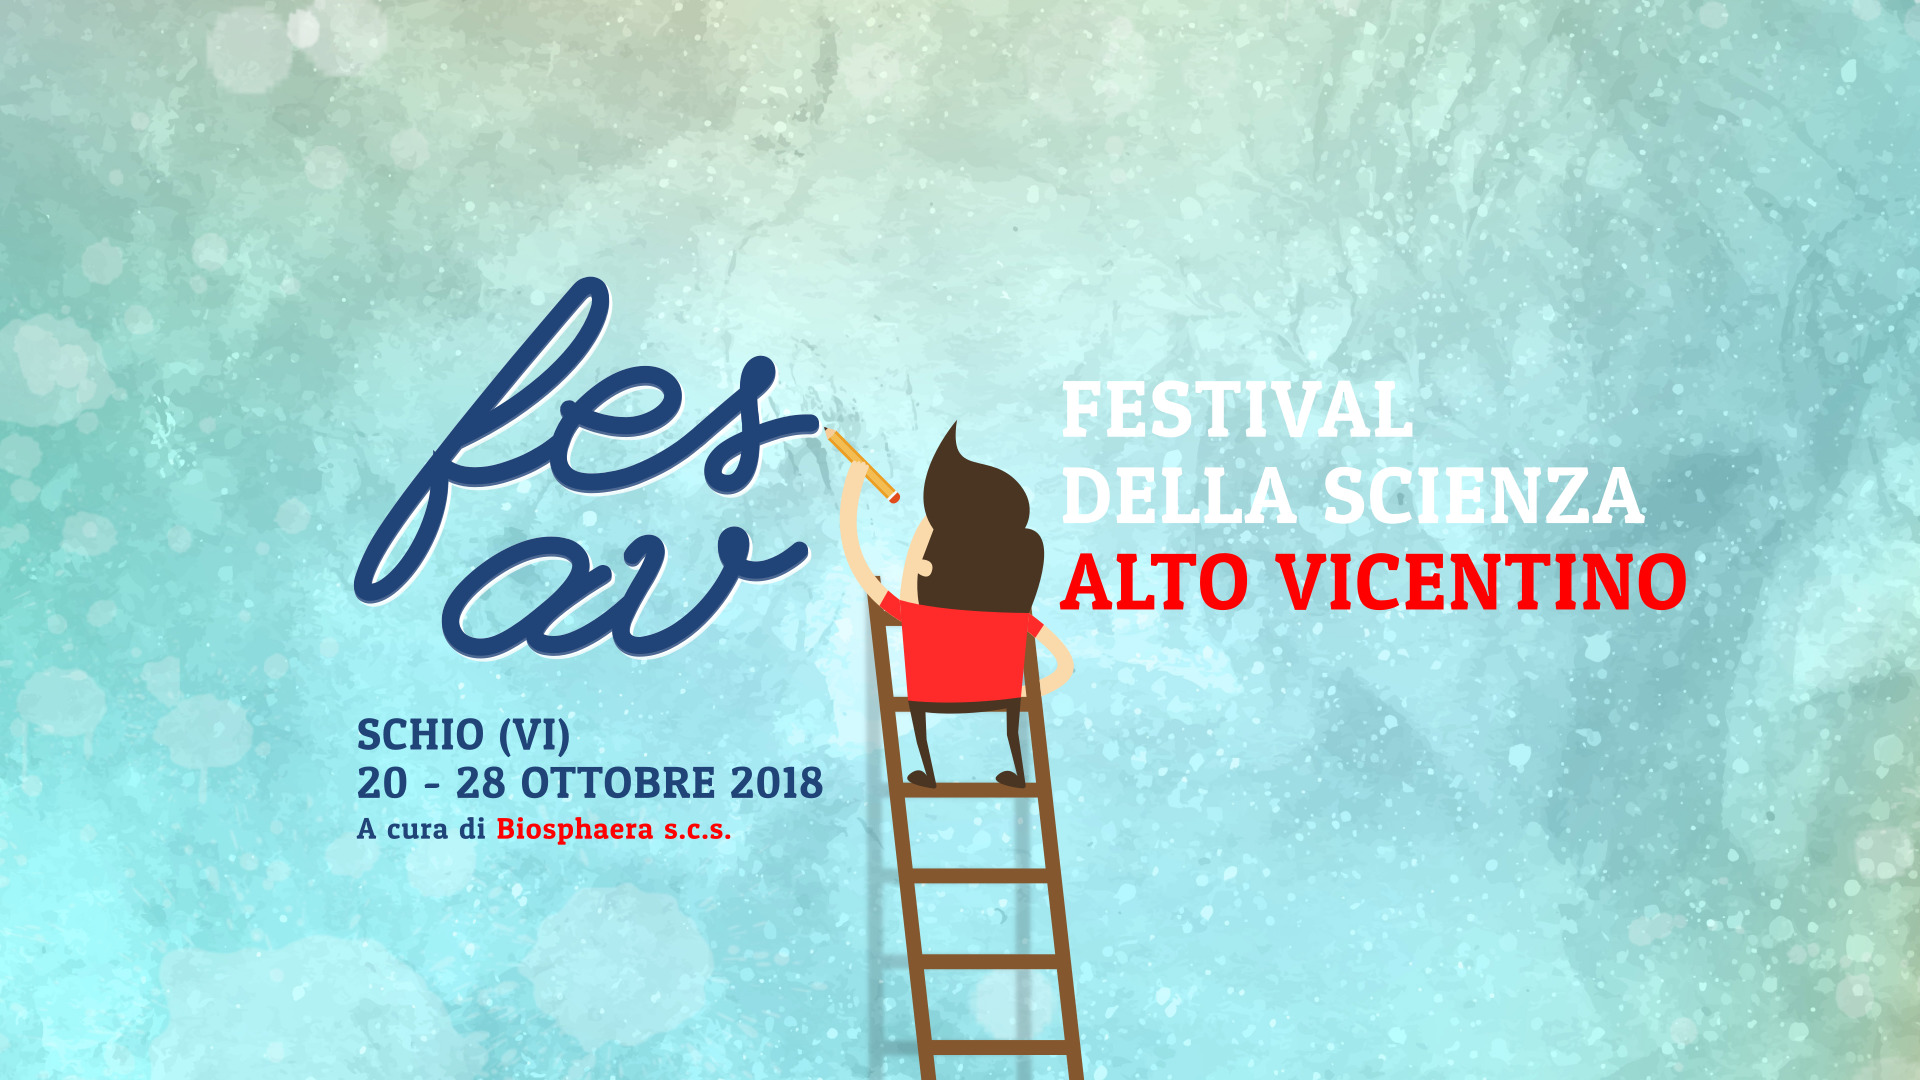 Fesav 2018 - Festival della Scienza dell'Alto Vicentino